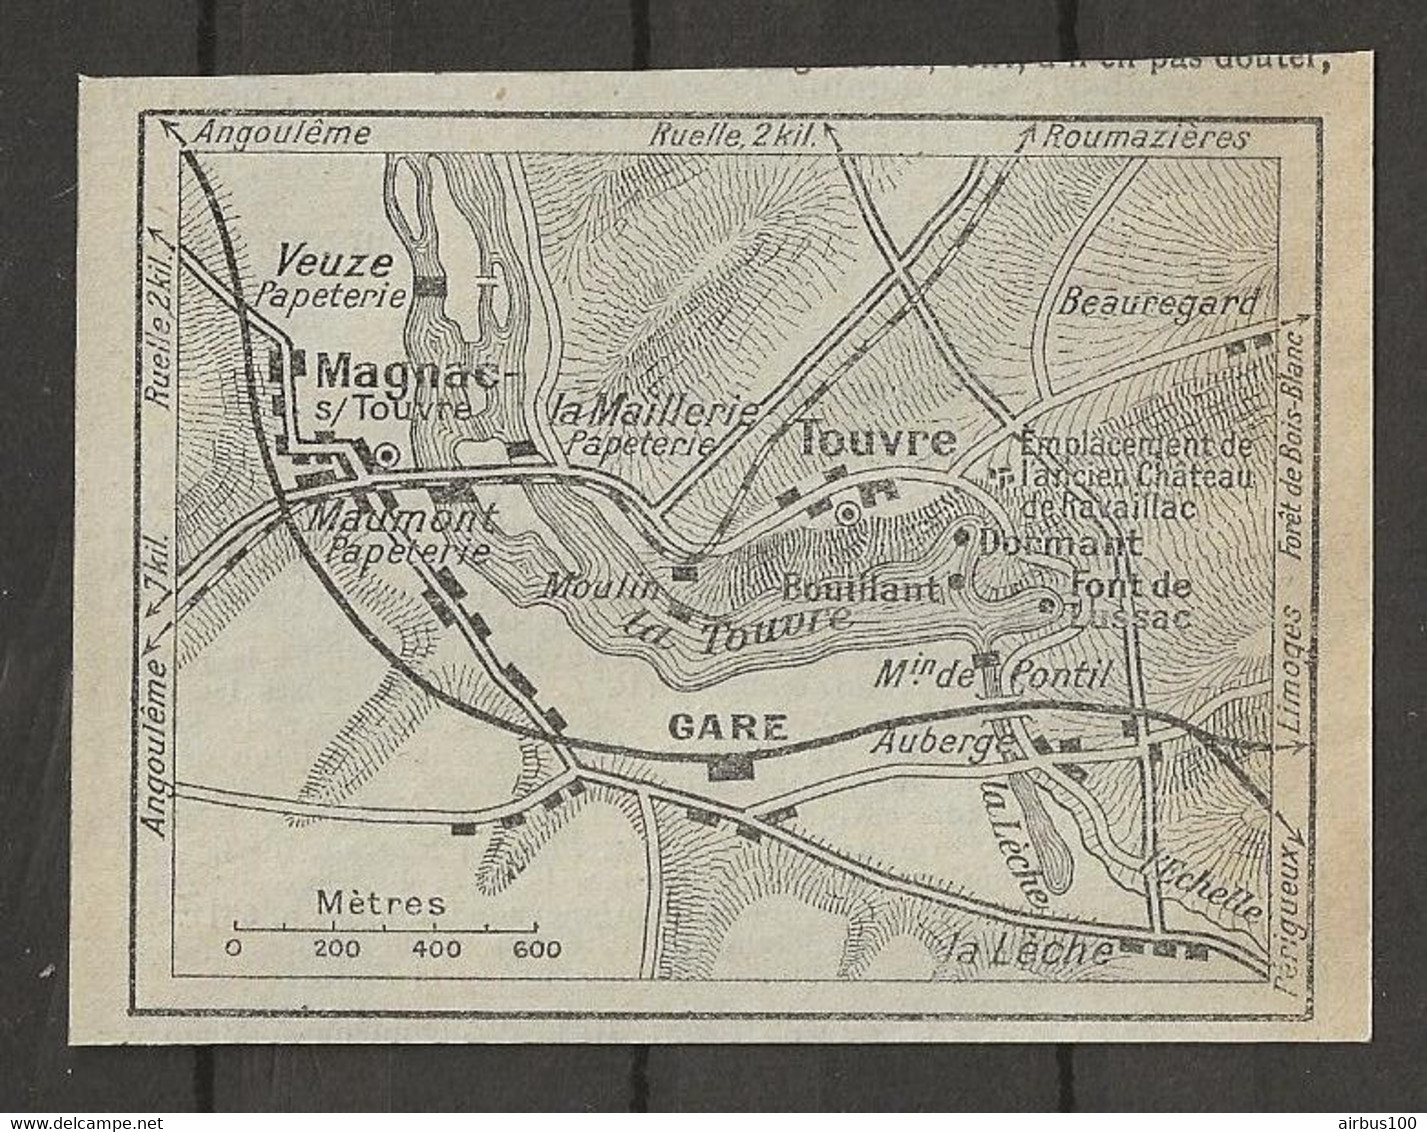 CARTE PLAN 1929 - MAGNAC Sur TOUVRE - VEUZE PAPETERIE - MAUMONT PAPETERIE - Carte Topografiche